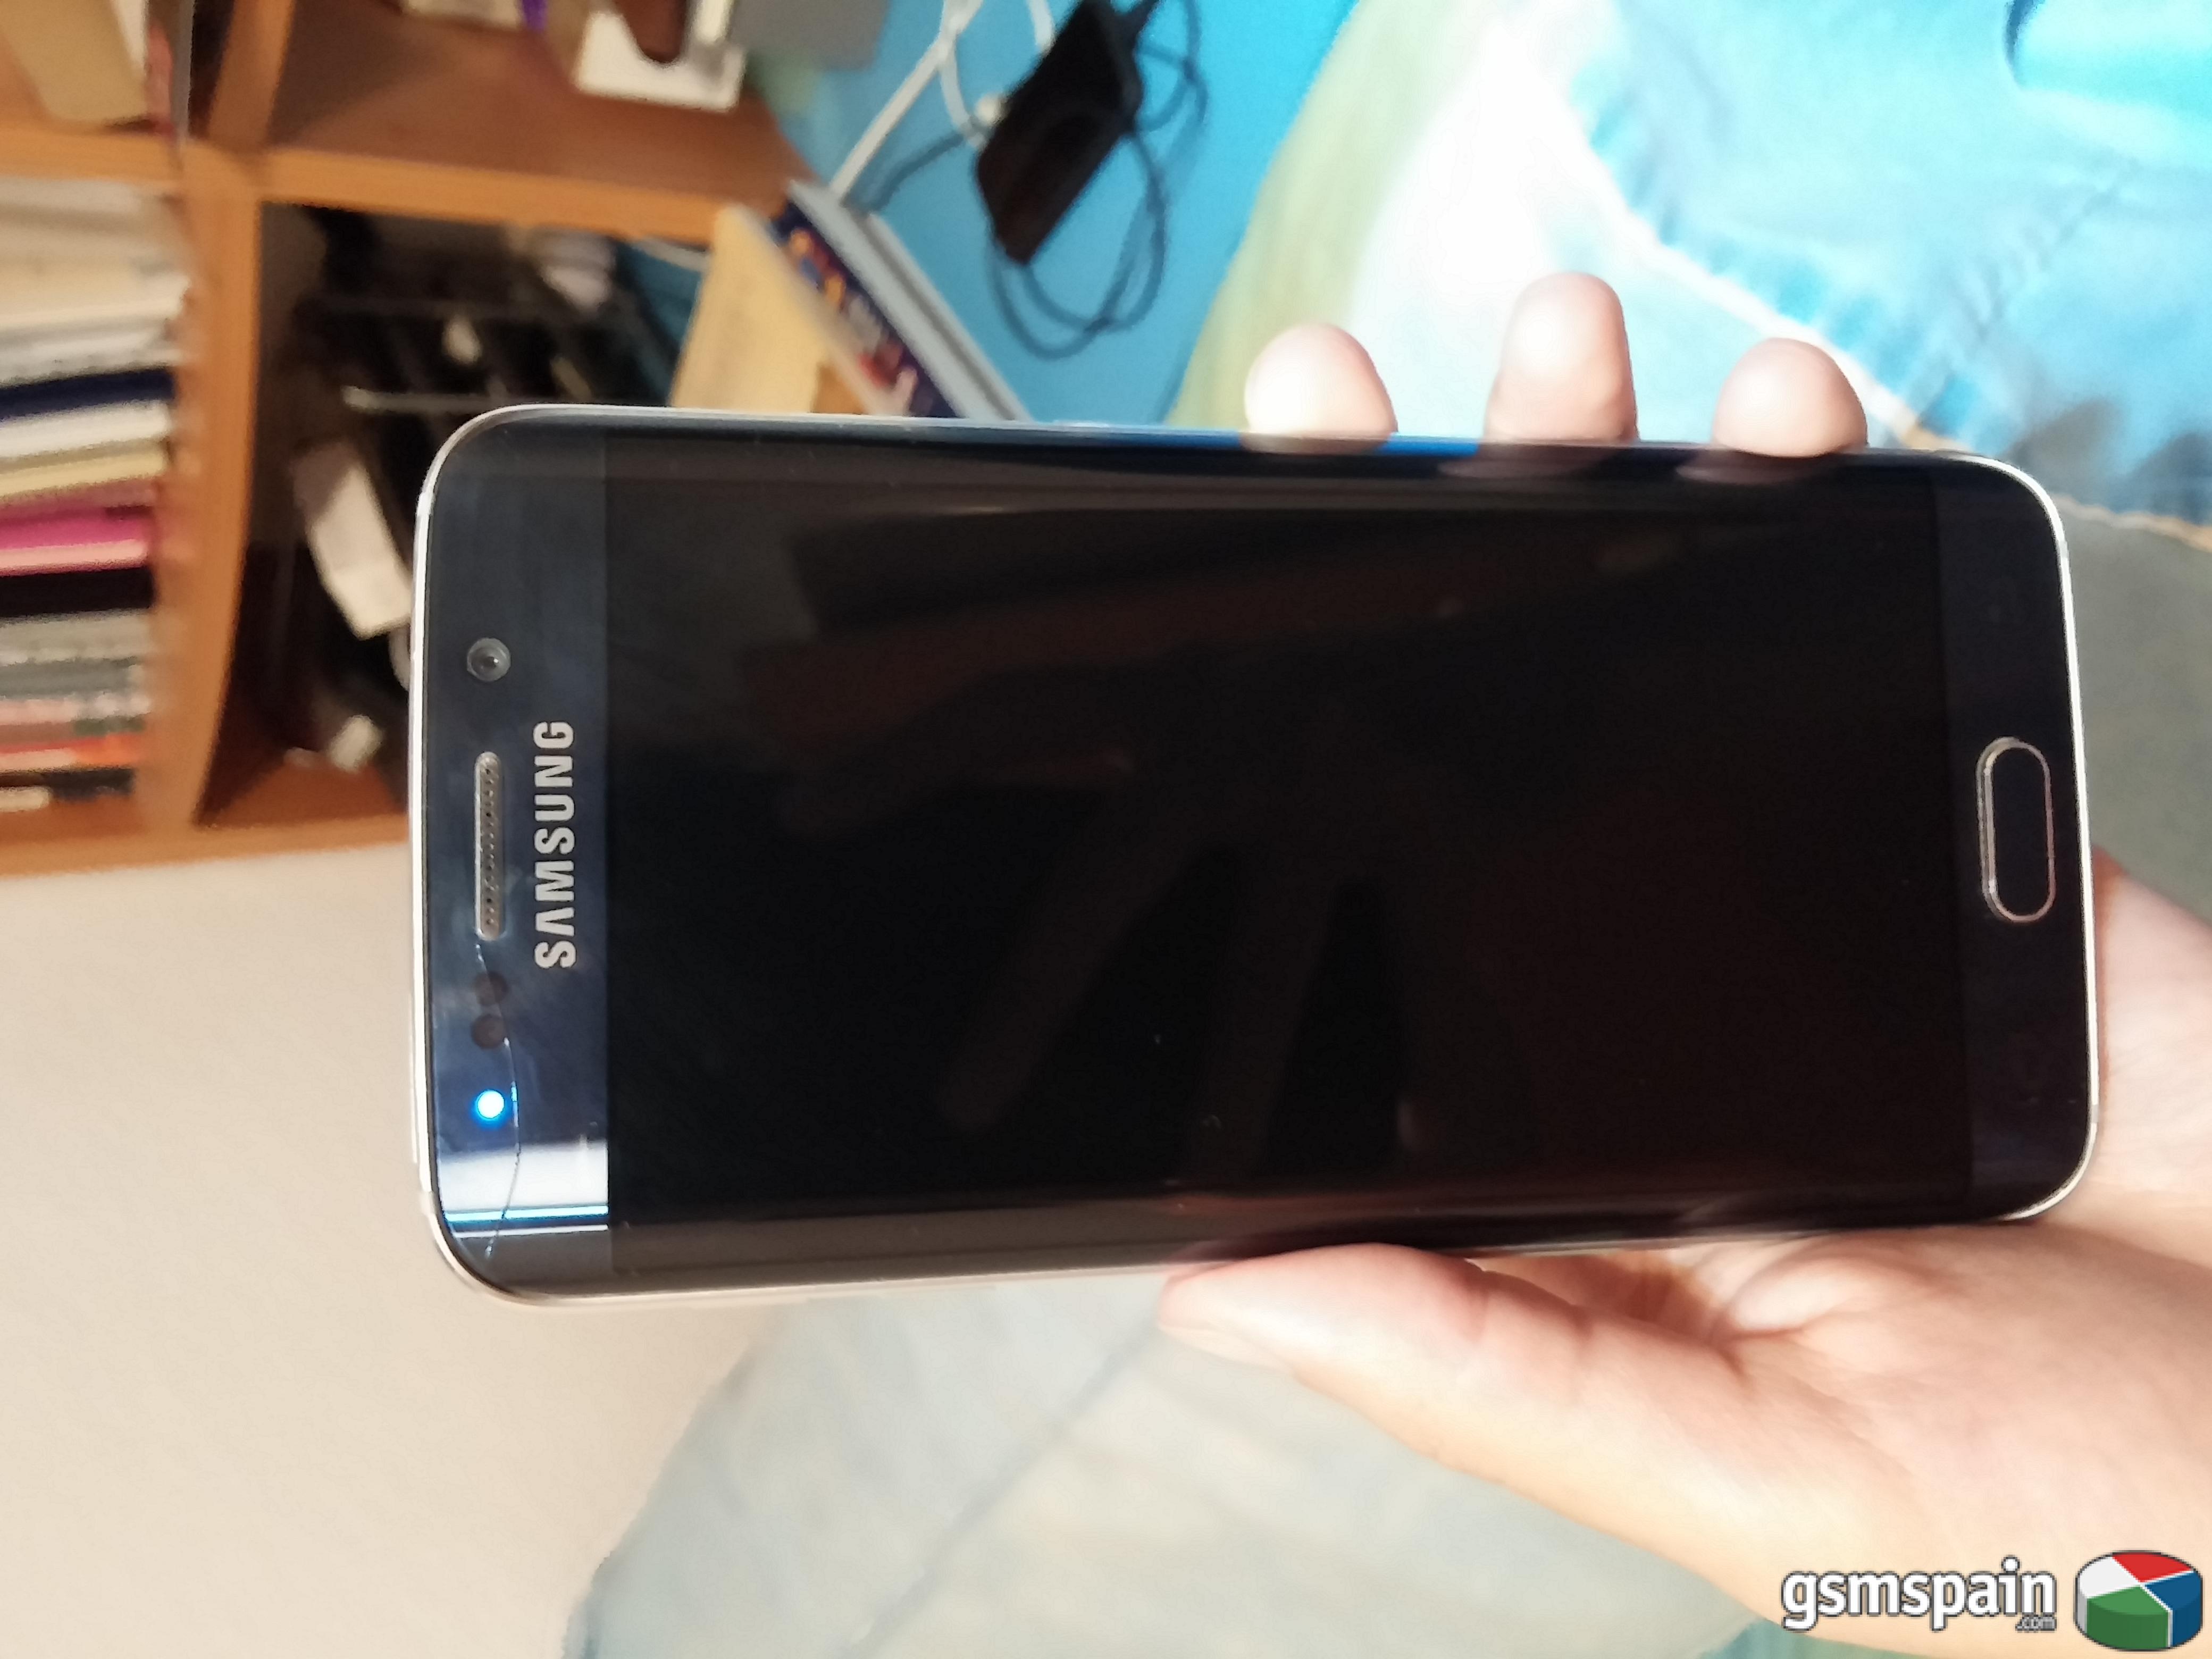 [VENDO] Samsung Galaxy S6 EDGE 32gb BLACK SAPHIRE (El mas barato del foro)